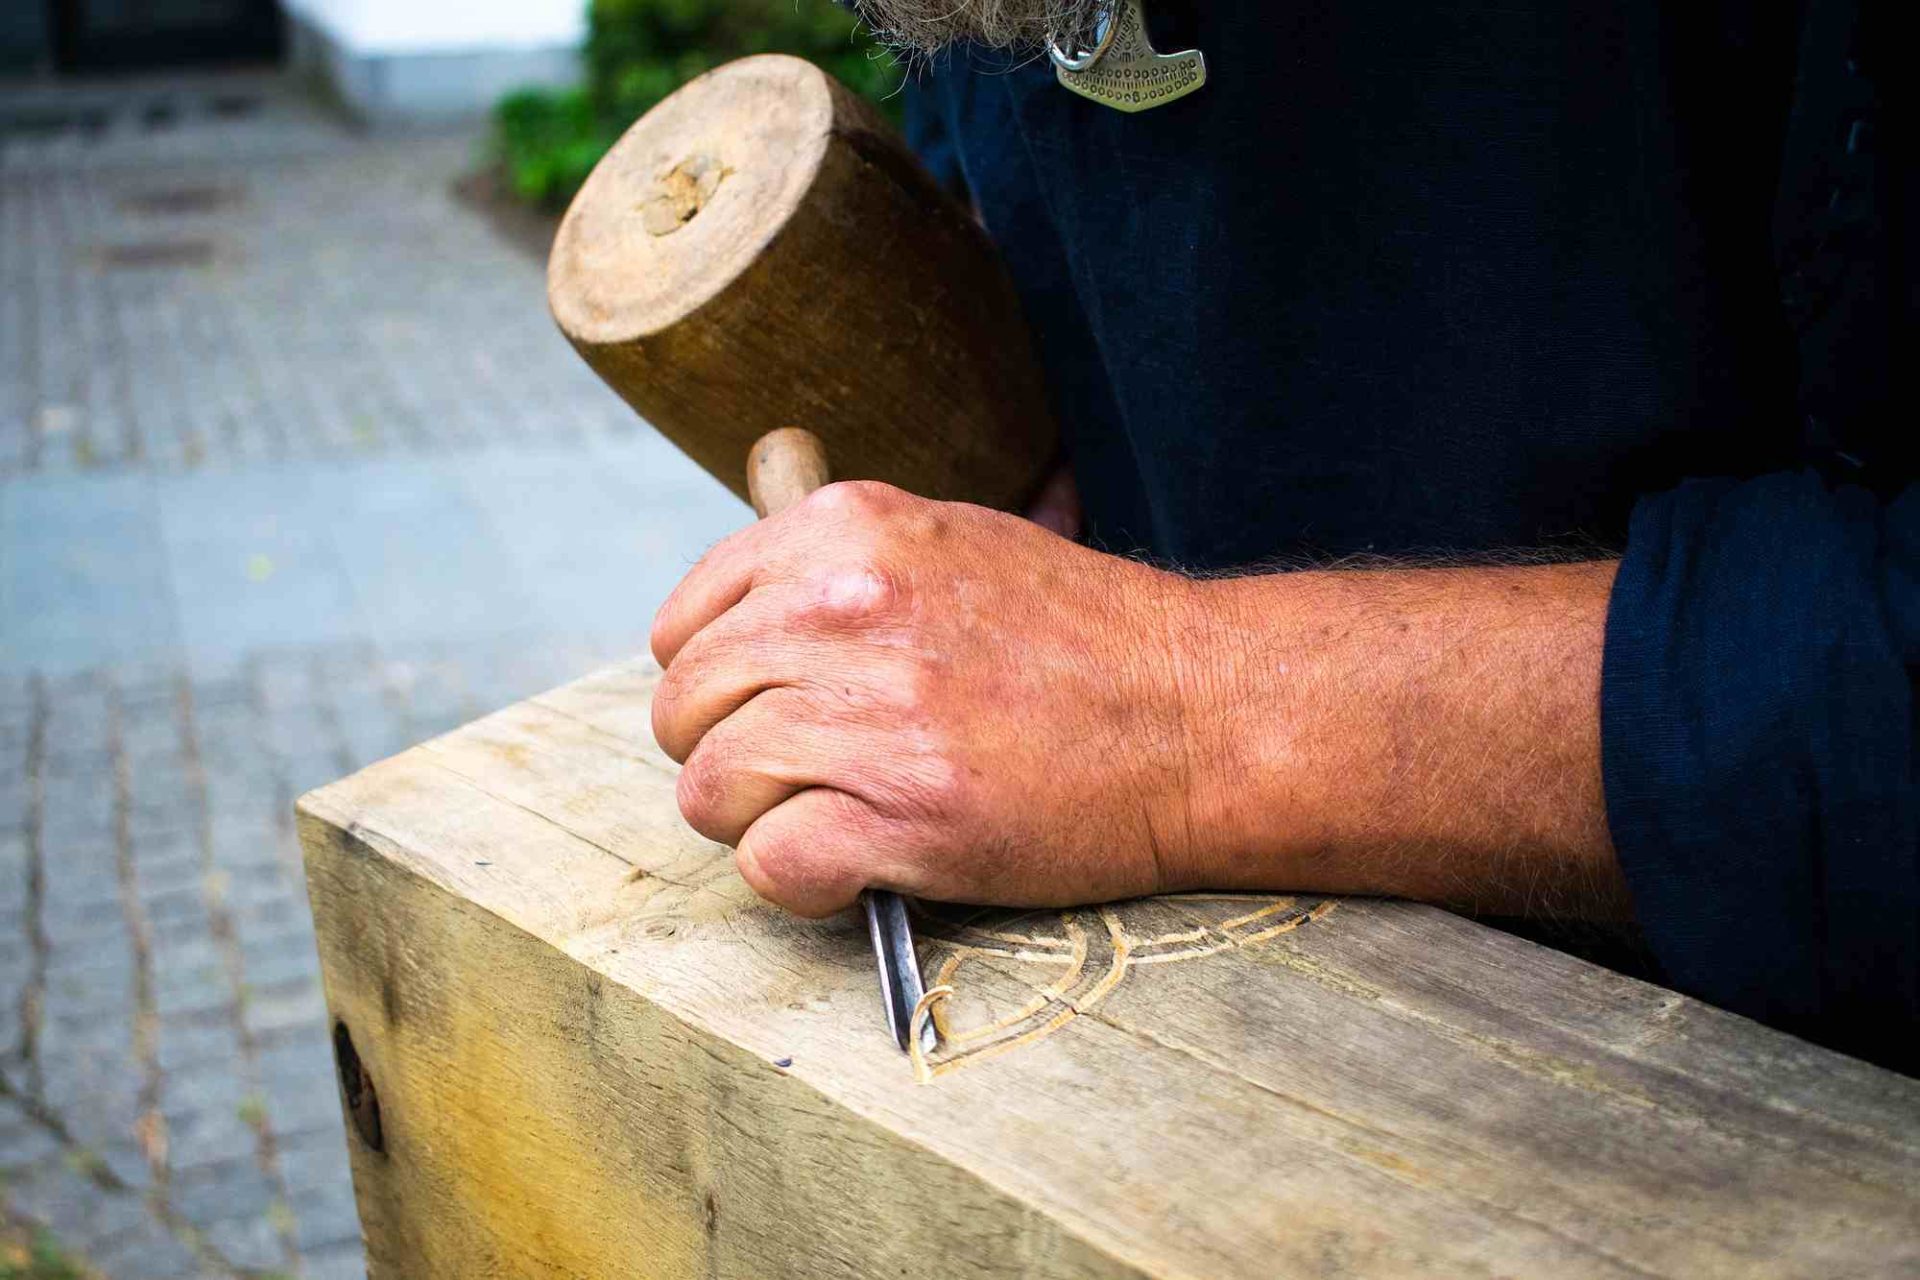 Holzarbeiten im Erlebniszentrum Kongernes Jelling in Jelling, Hærvejen